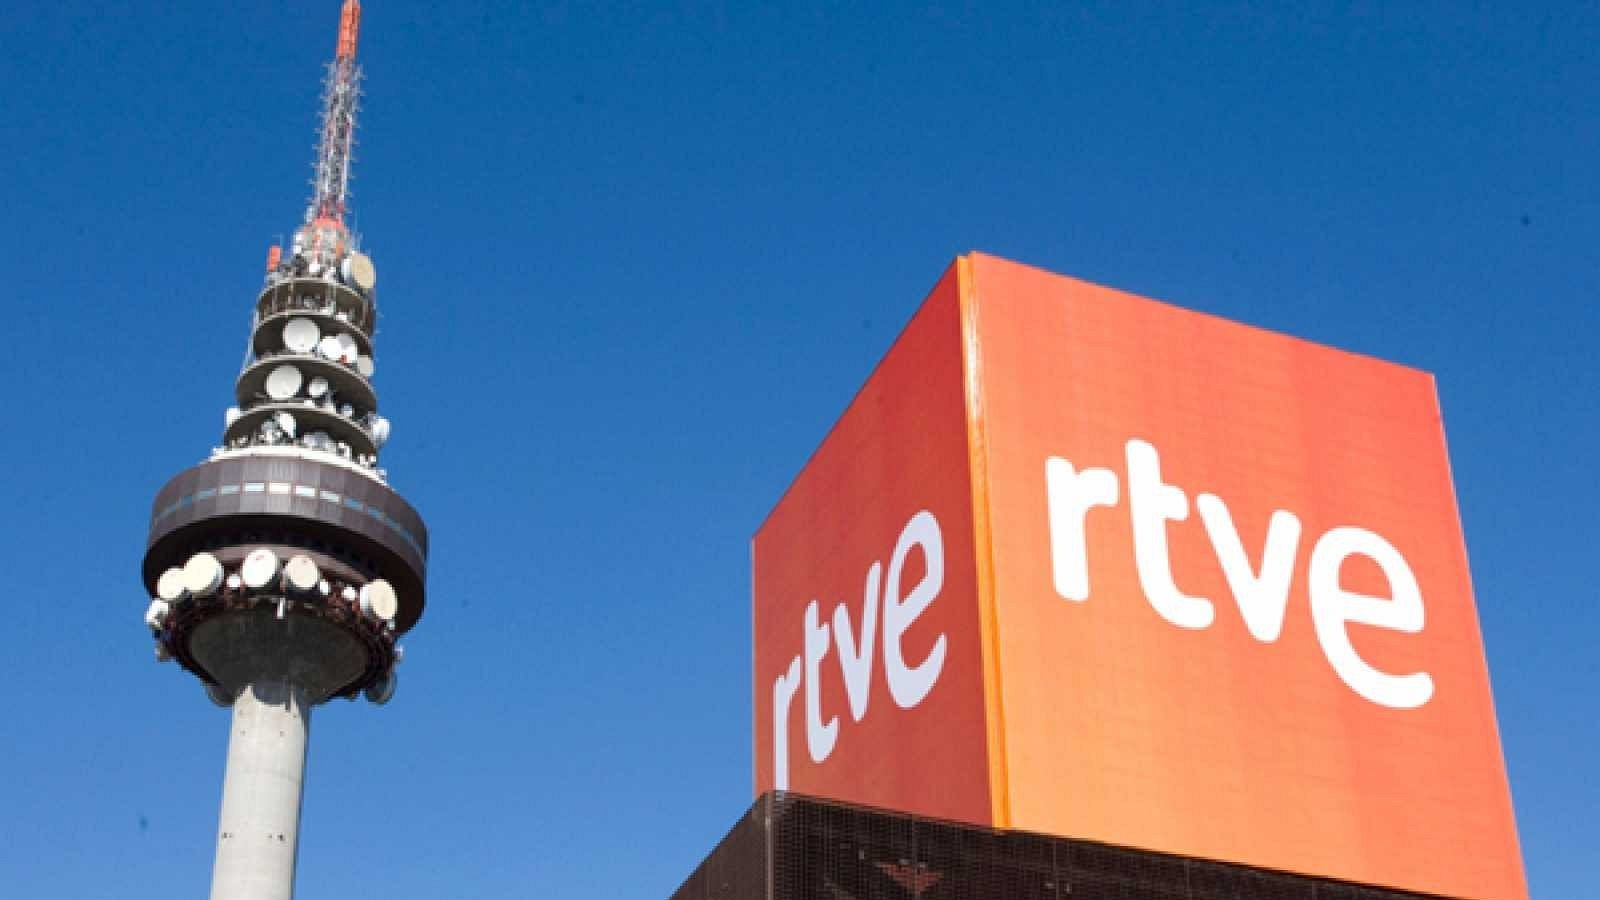 La sede de RTVE en Torrespaña